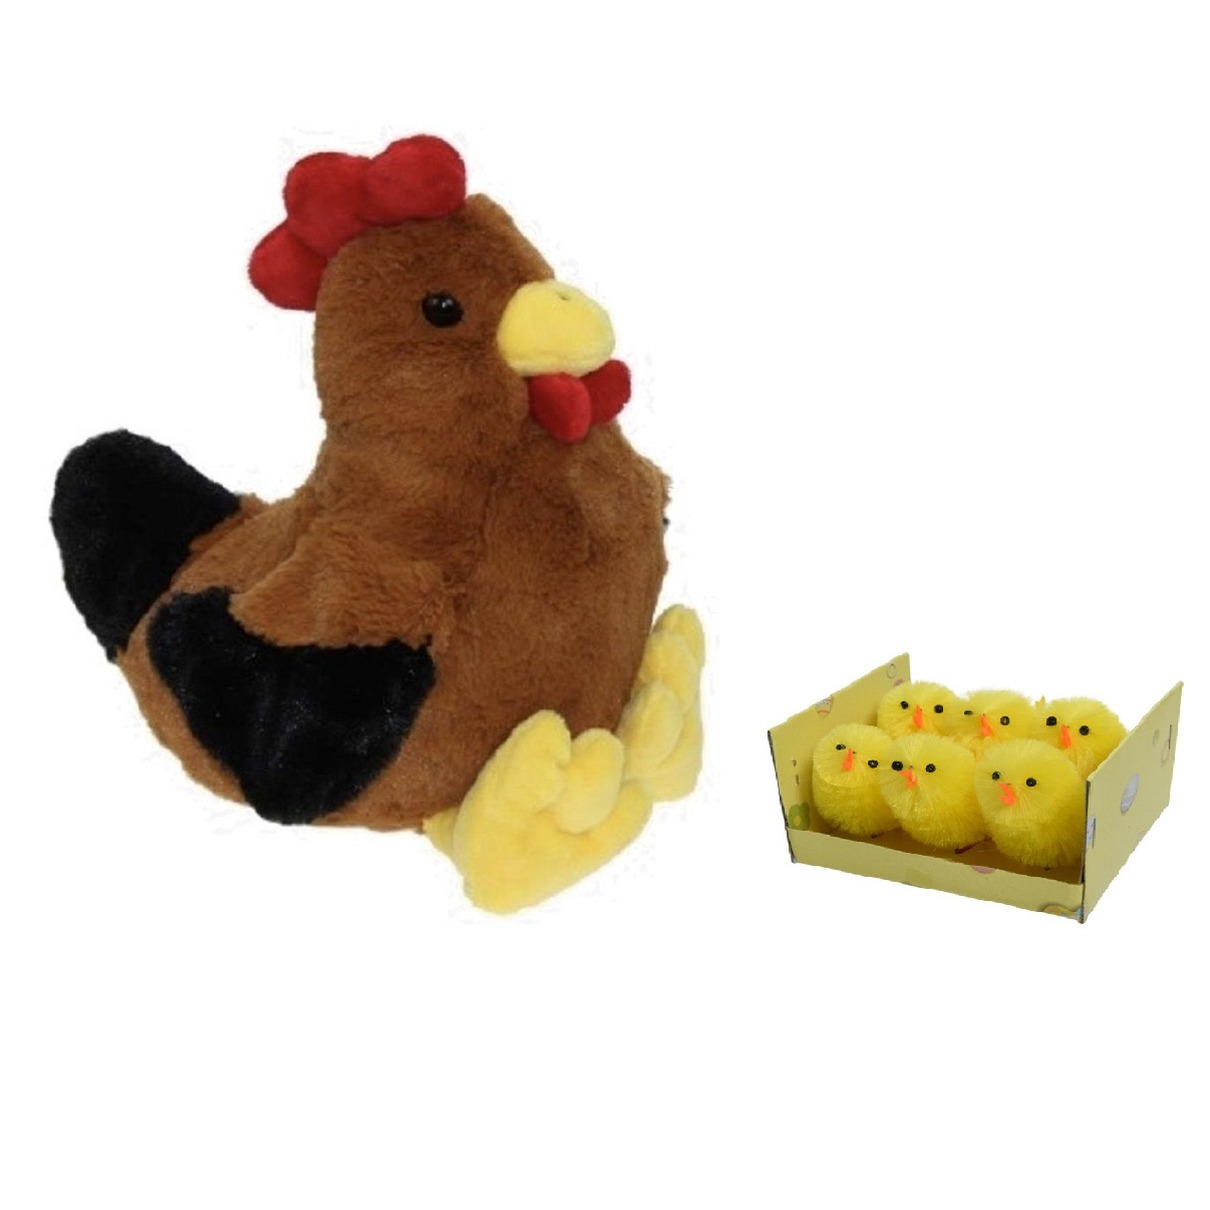 Pluche bruine kippen-hanen knuffel van 25 cm met 6x stuks mini kuikentjes 4 cm